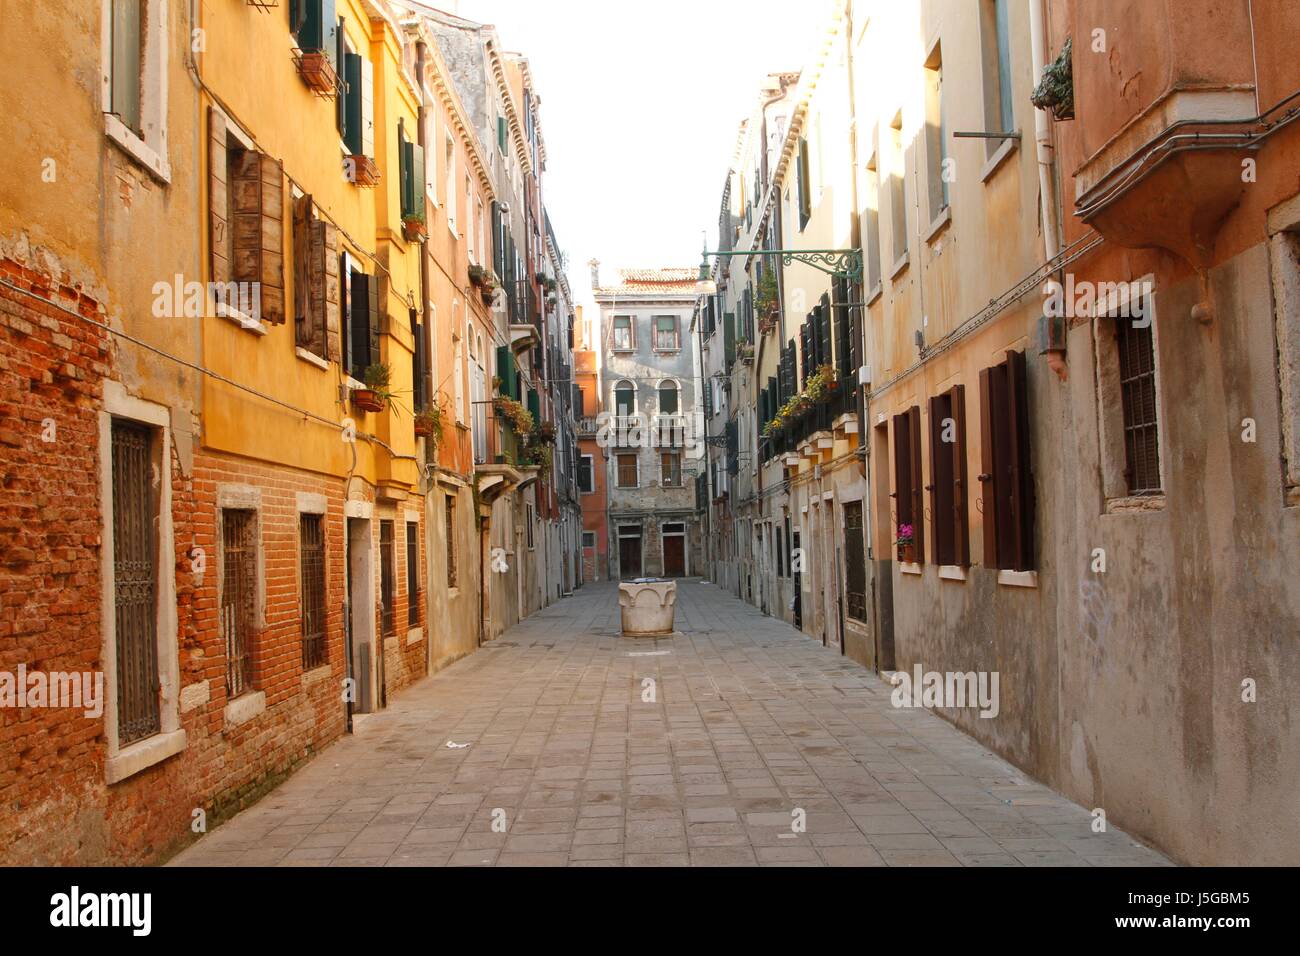 Street scene in Venice, Italy Stock Photo